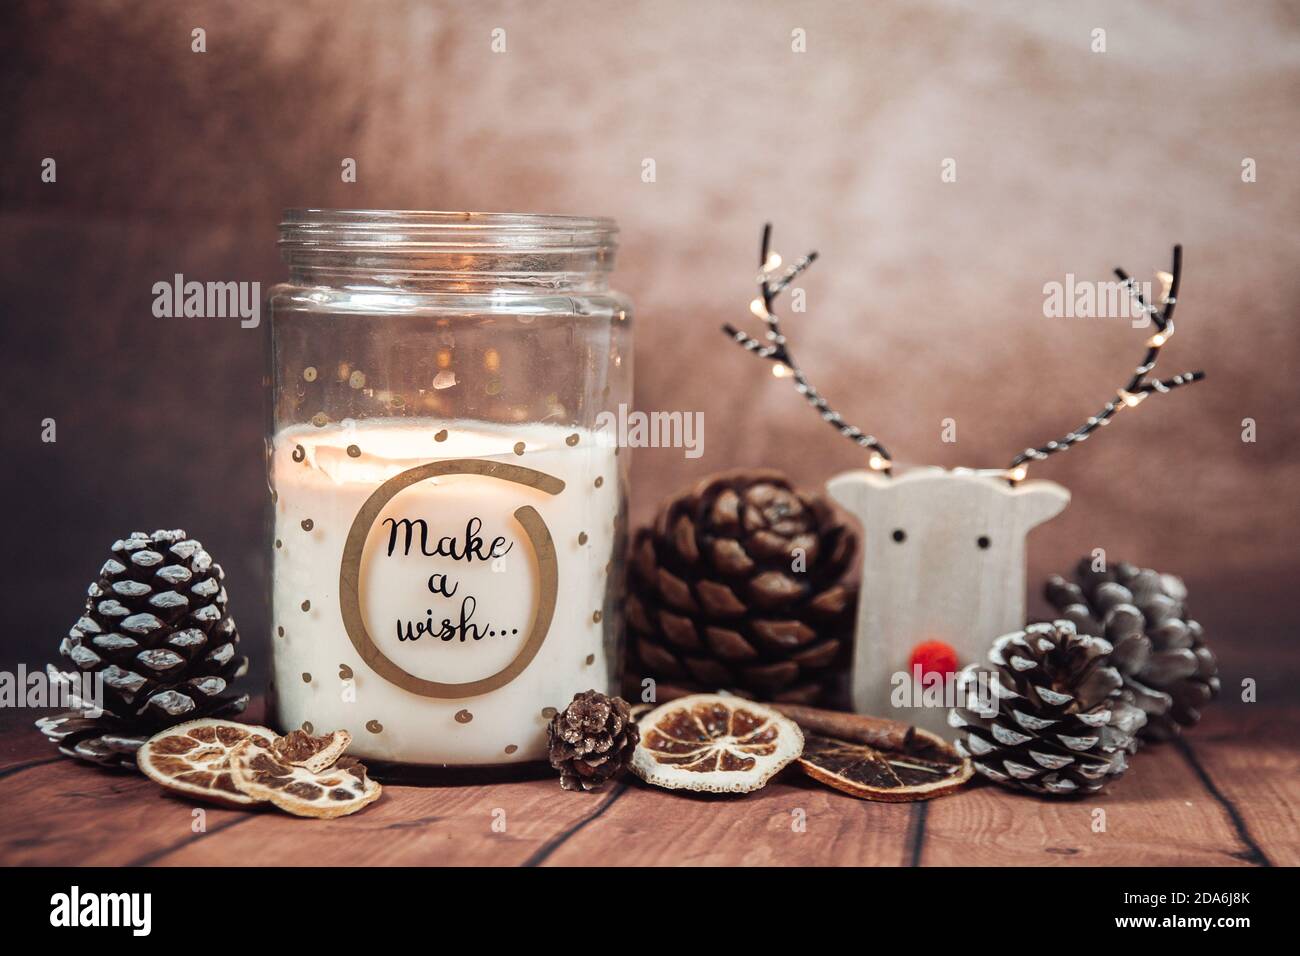 Weihnachtskomposition mit "Make a wish" Kerze in einem Glas mit Regenhirsch, Weihnachtsbeleuchtung und Tannenzapfen auf einem rustikalen braunen Hintergrund. Weihnachten Stockfoto